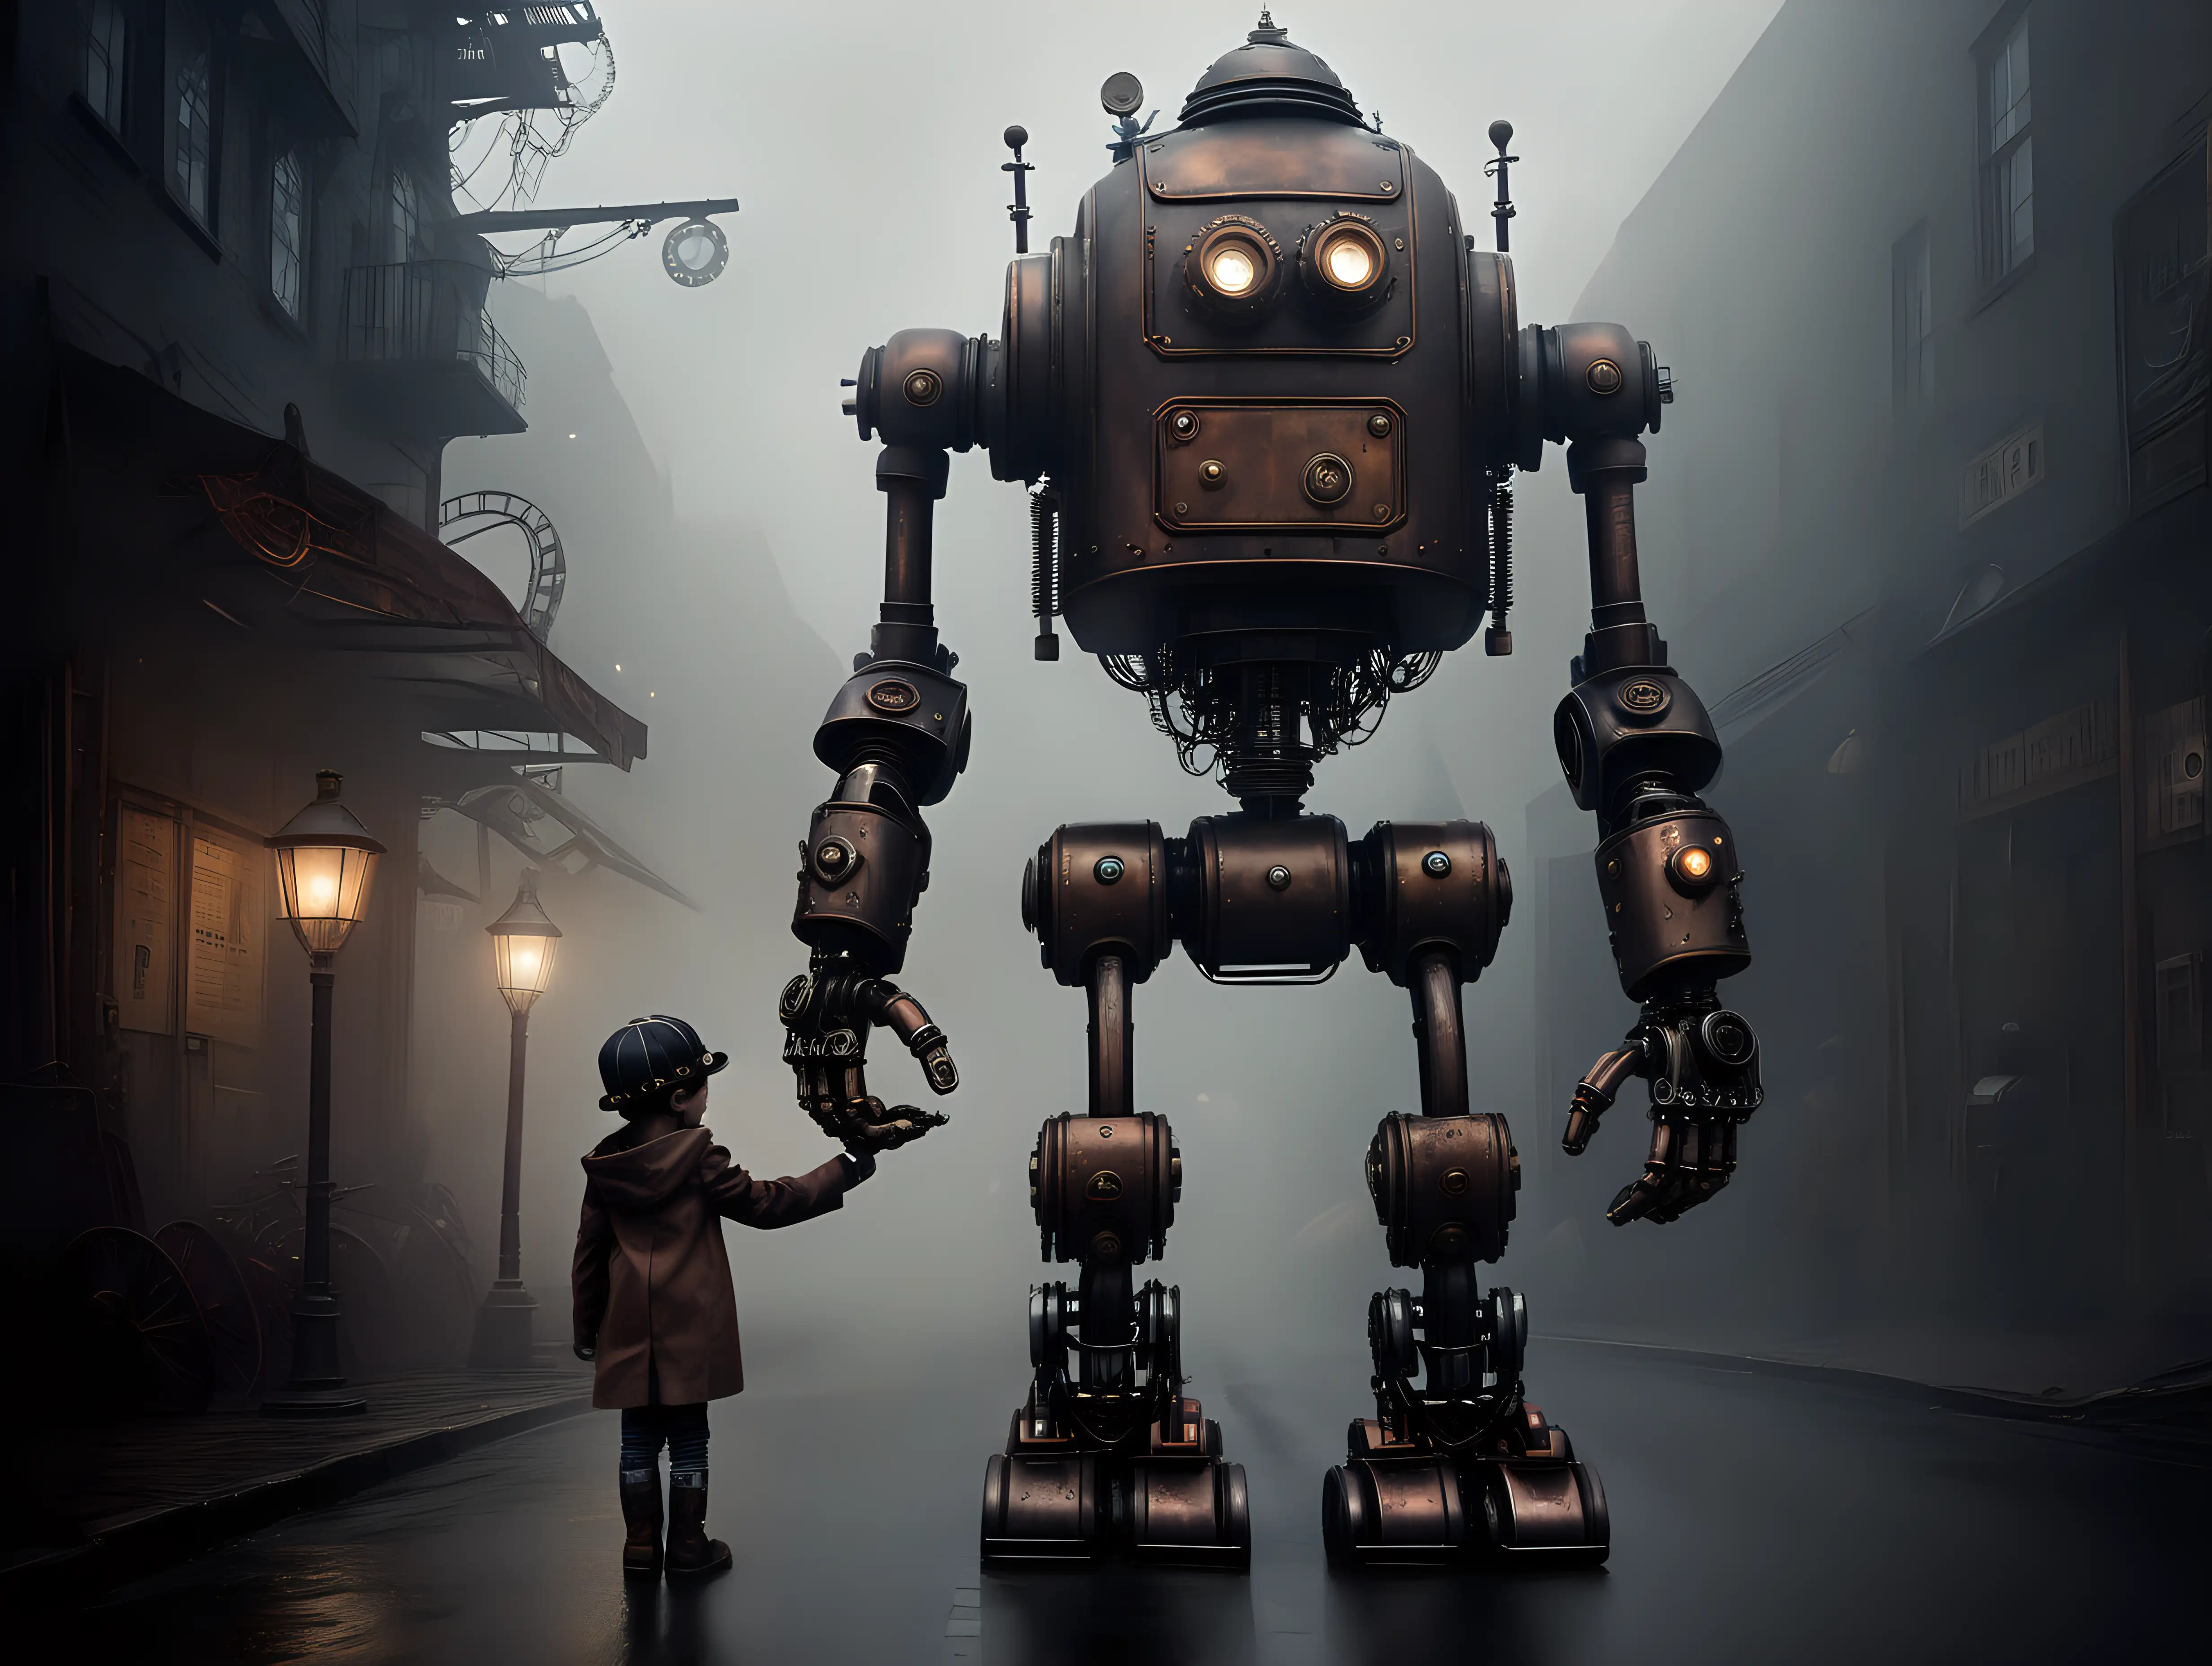 Steampunk robots, steel, darkness, street, fog, child, hand in hand with robot 